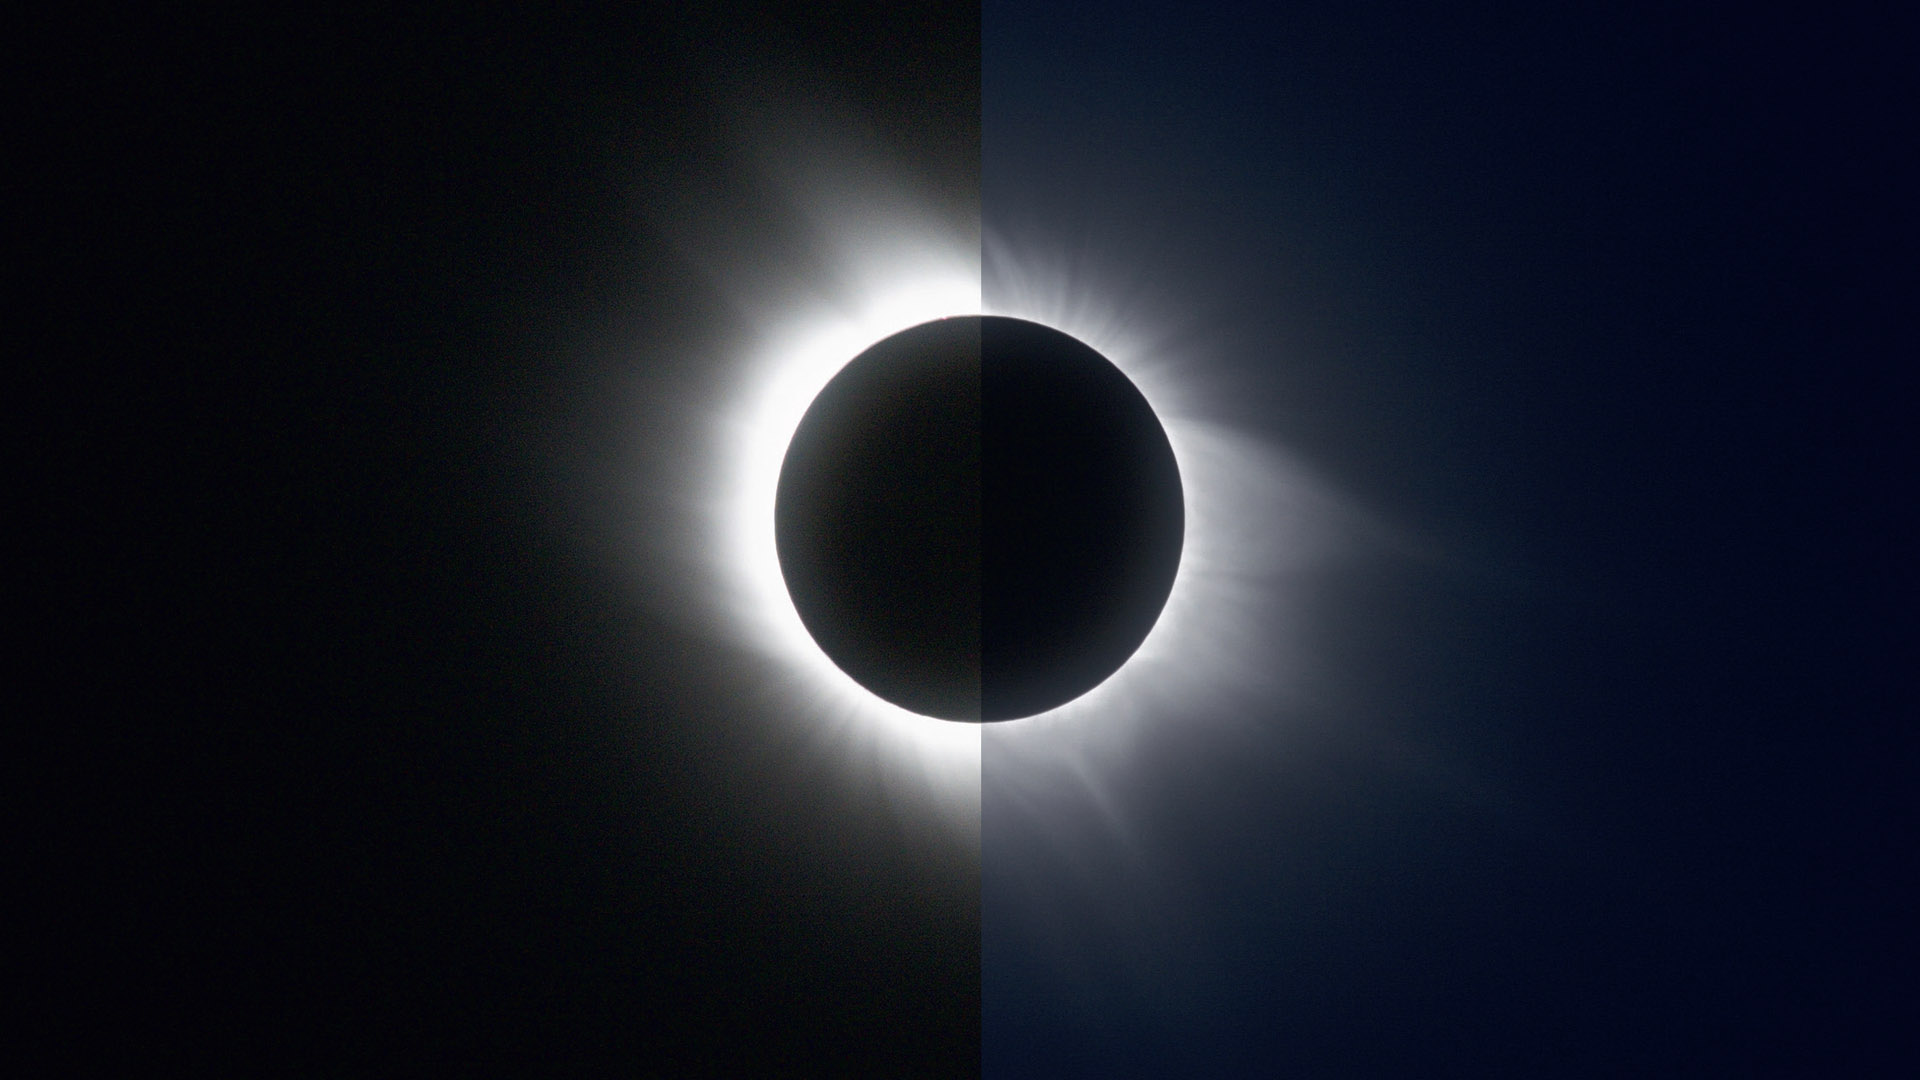 Două fotografii ale eclipsei totale de Soare din 2006. În stânga, o singură expunere cu un timp de expunere de 1/8s, iar în dreapta, o imagine compusă HDR, alcătuită din fotografii cu timp de expunere de 1/8s - 1/1000s. M.Weigand